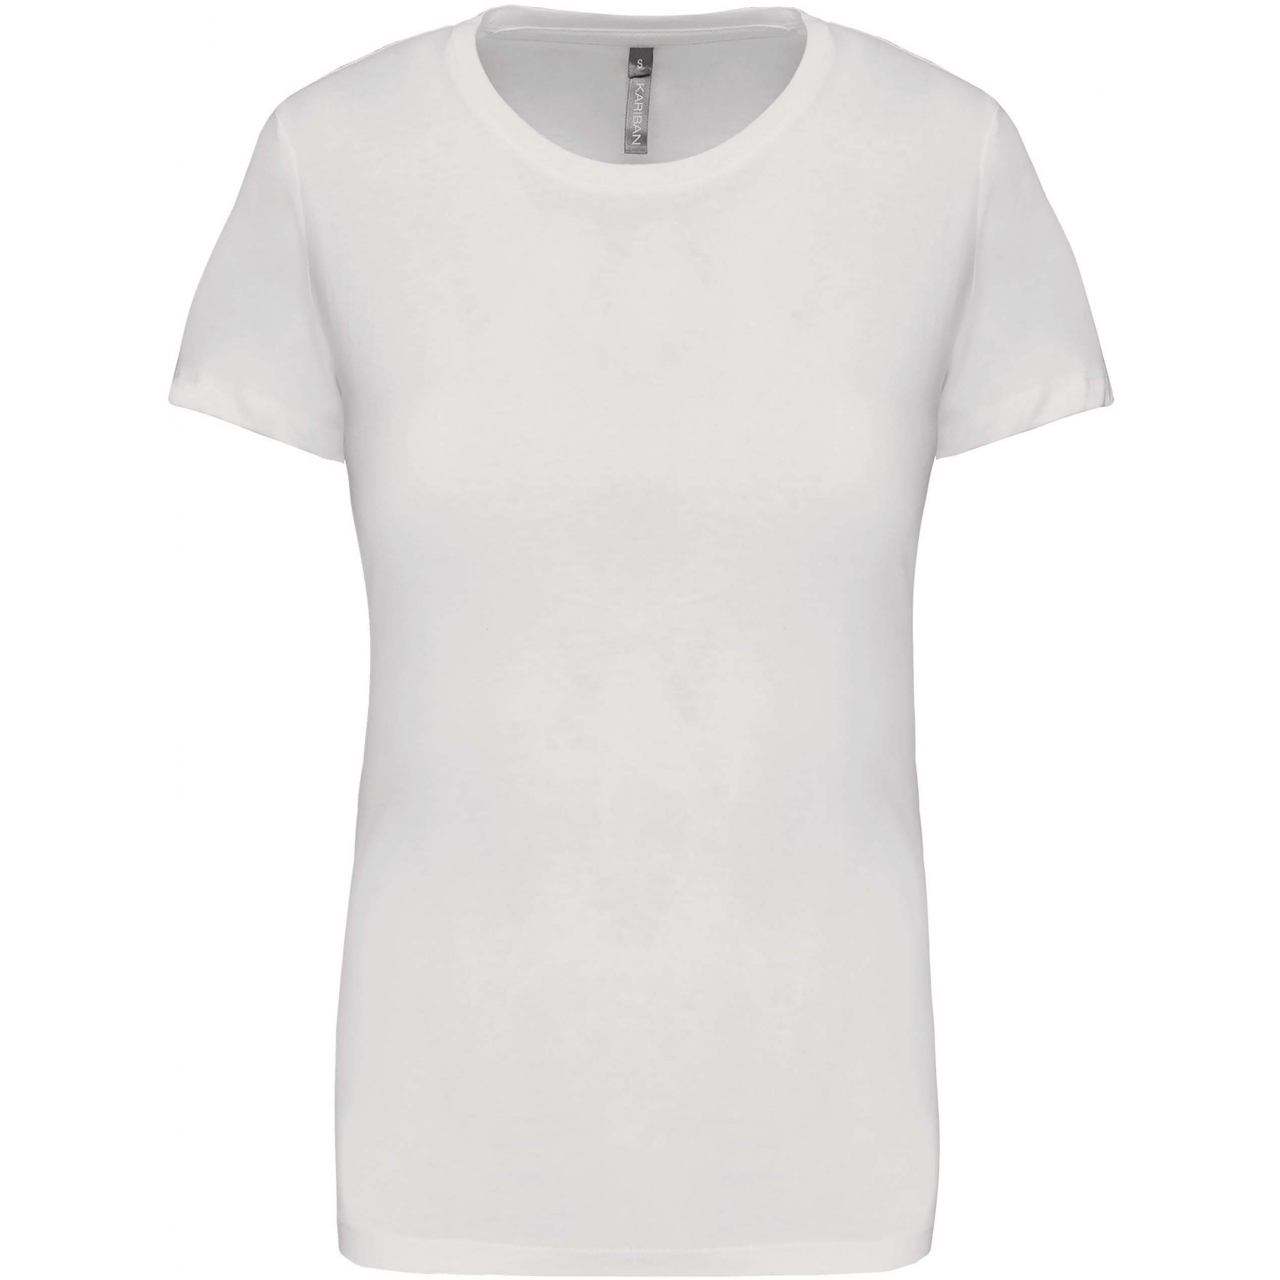 Dámské tričko Kariban s krátkým rukávem - bílé, XXL